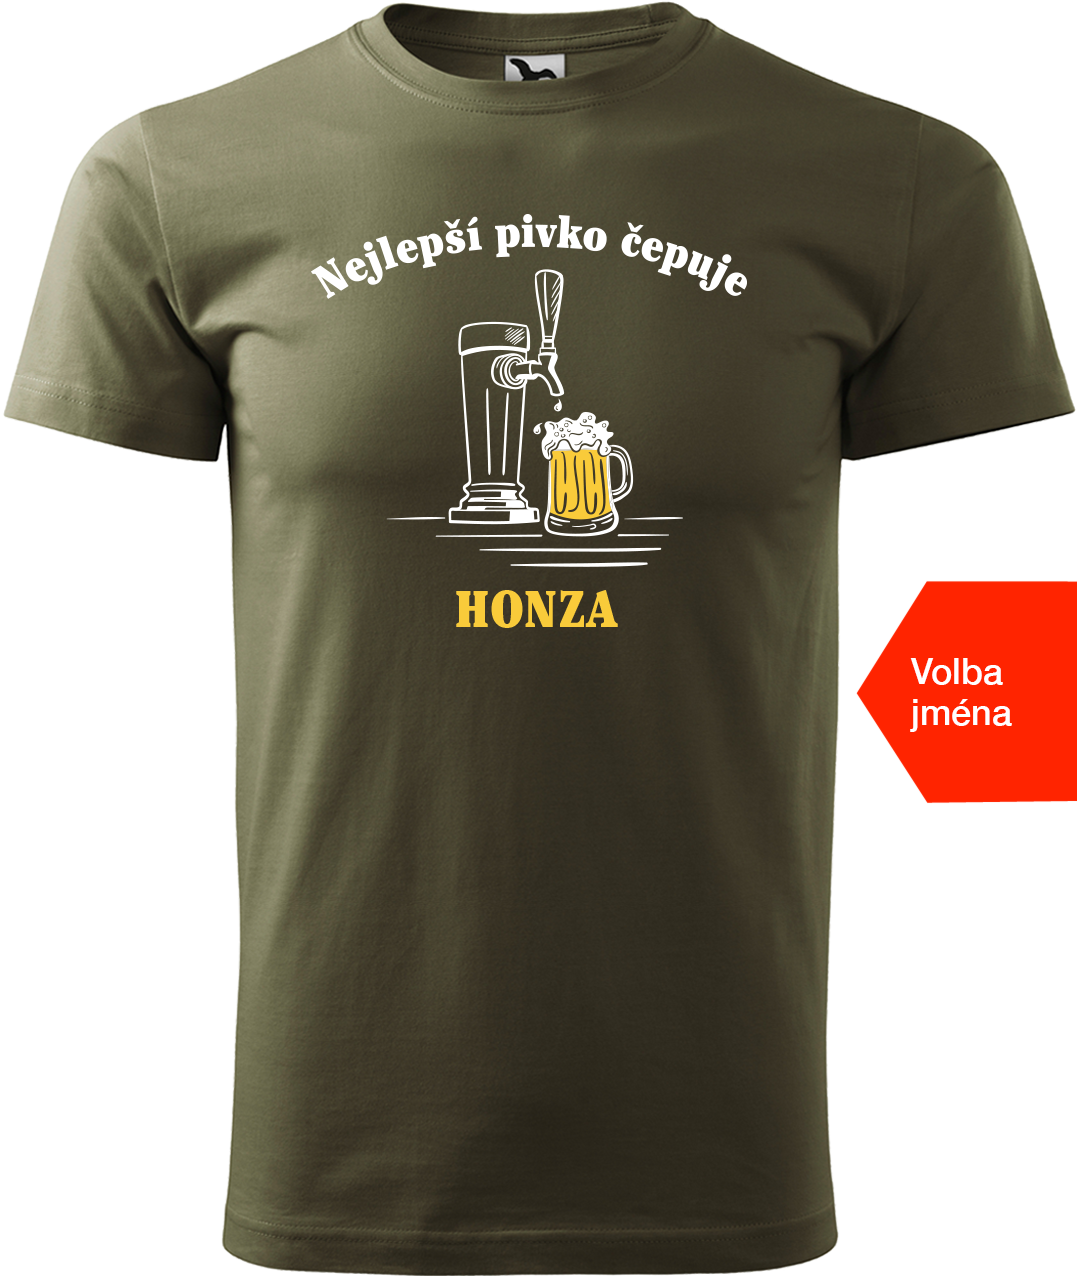 Pivní tričko - Nejlepší pivko čepuje + jméno Velikost: 4XL, Barva: Military (69)